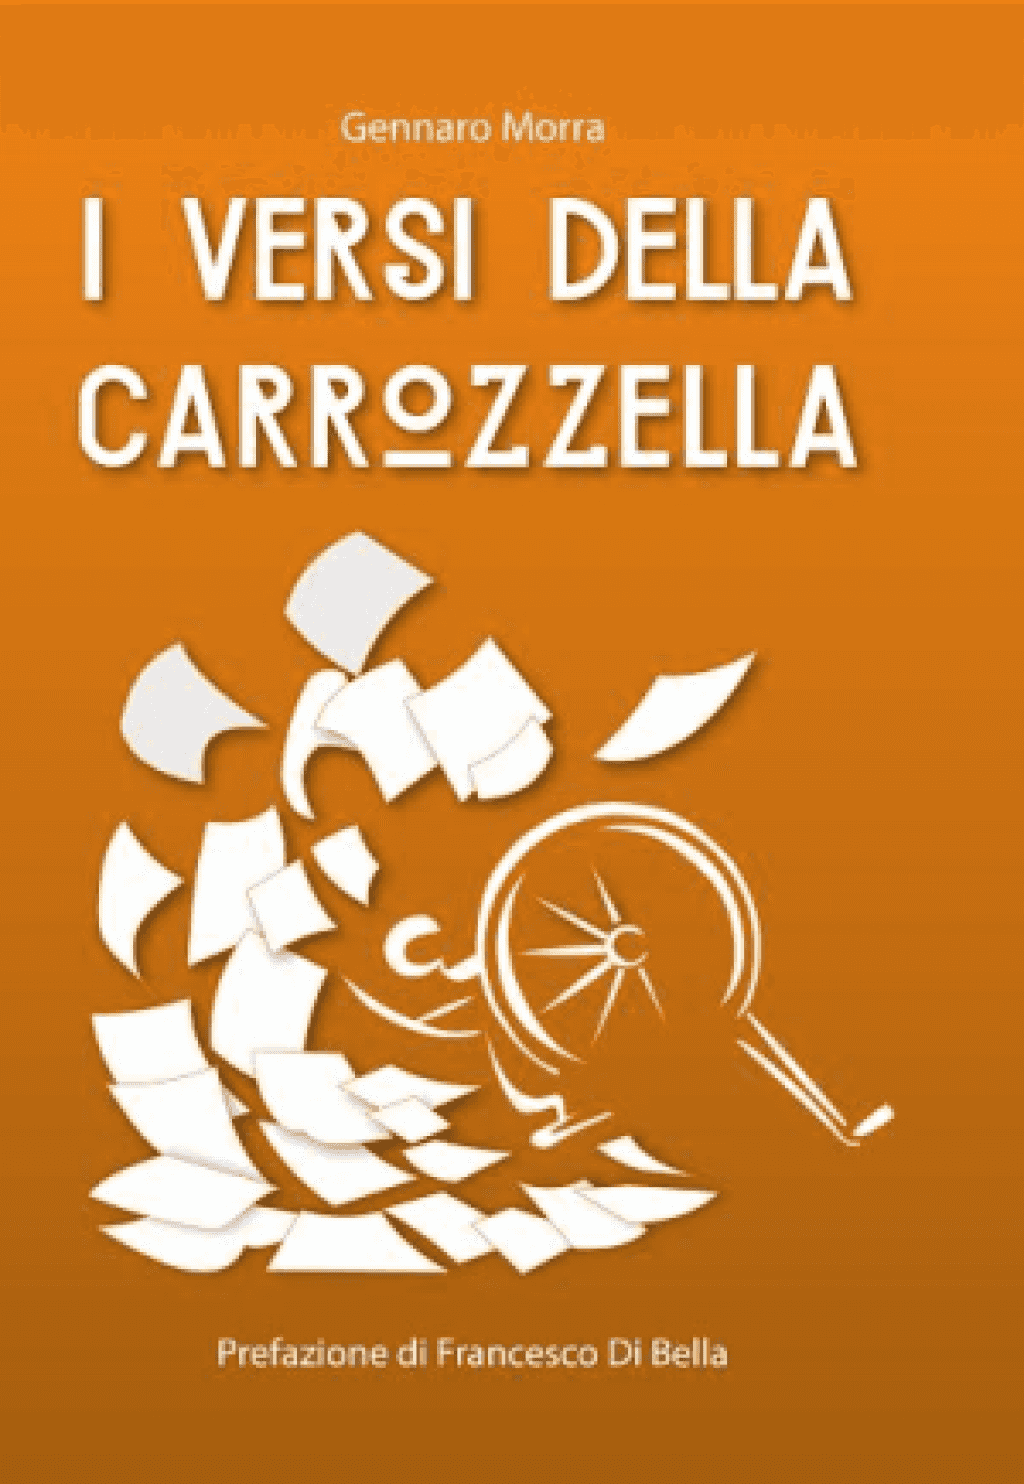 Presentazione de I versi della carrozzella di Gennaro Morra, giovedì 3 marzo Sottopalco del Bellini